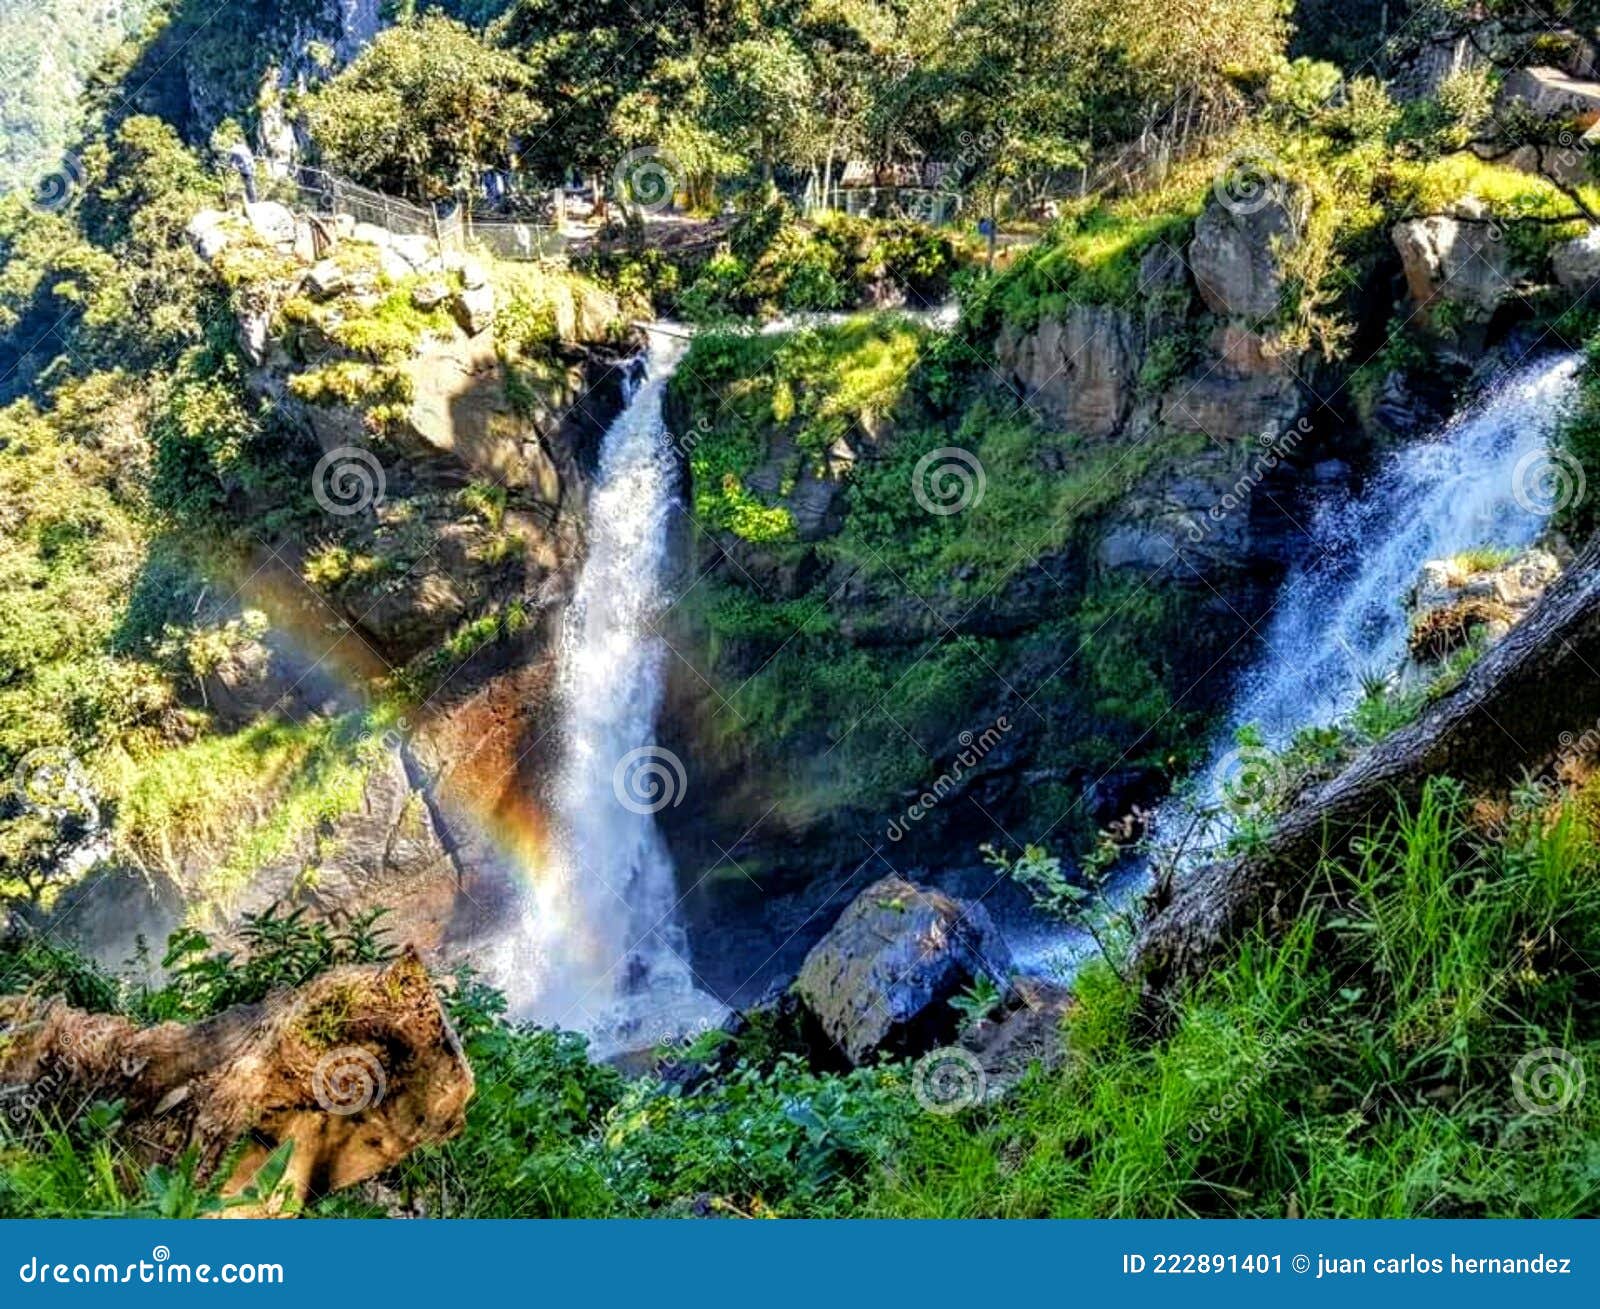 cascada de quetzalapan, atractivo en pueblo mÃÂ¡gico de chignahuapan, puebla, mÃÂ©xico